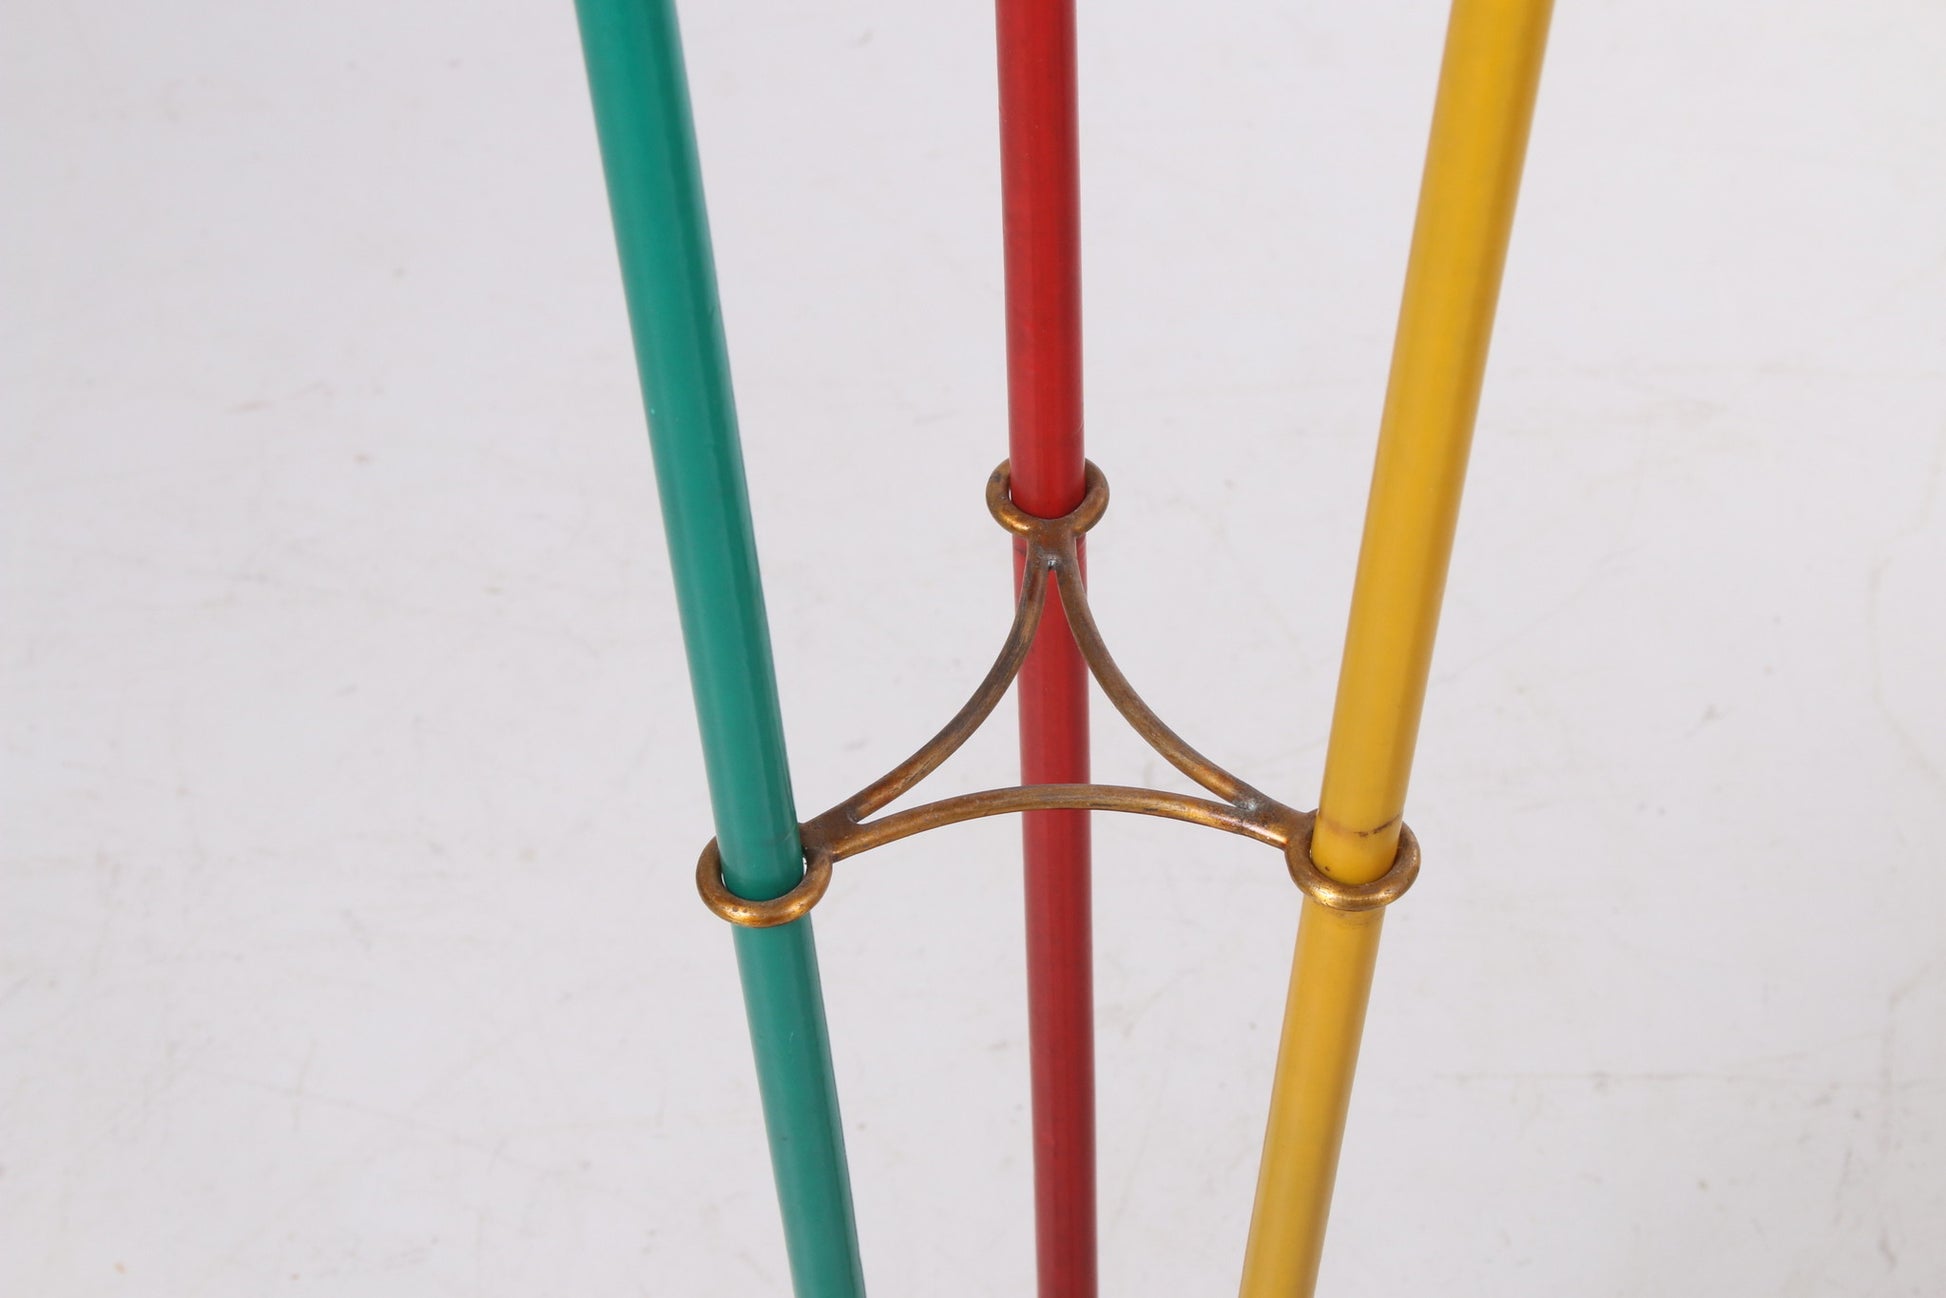 Vintage Driepoot Gekleurde Vloerlamp met Orginele stoffen kapjes 60's detail voetstuk